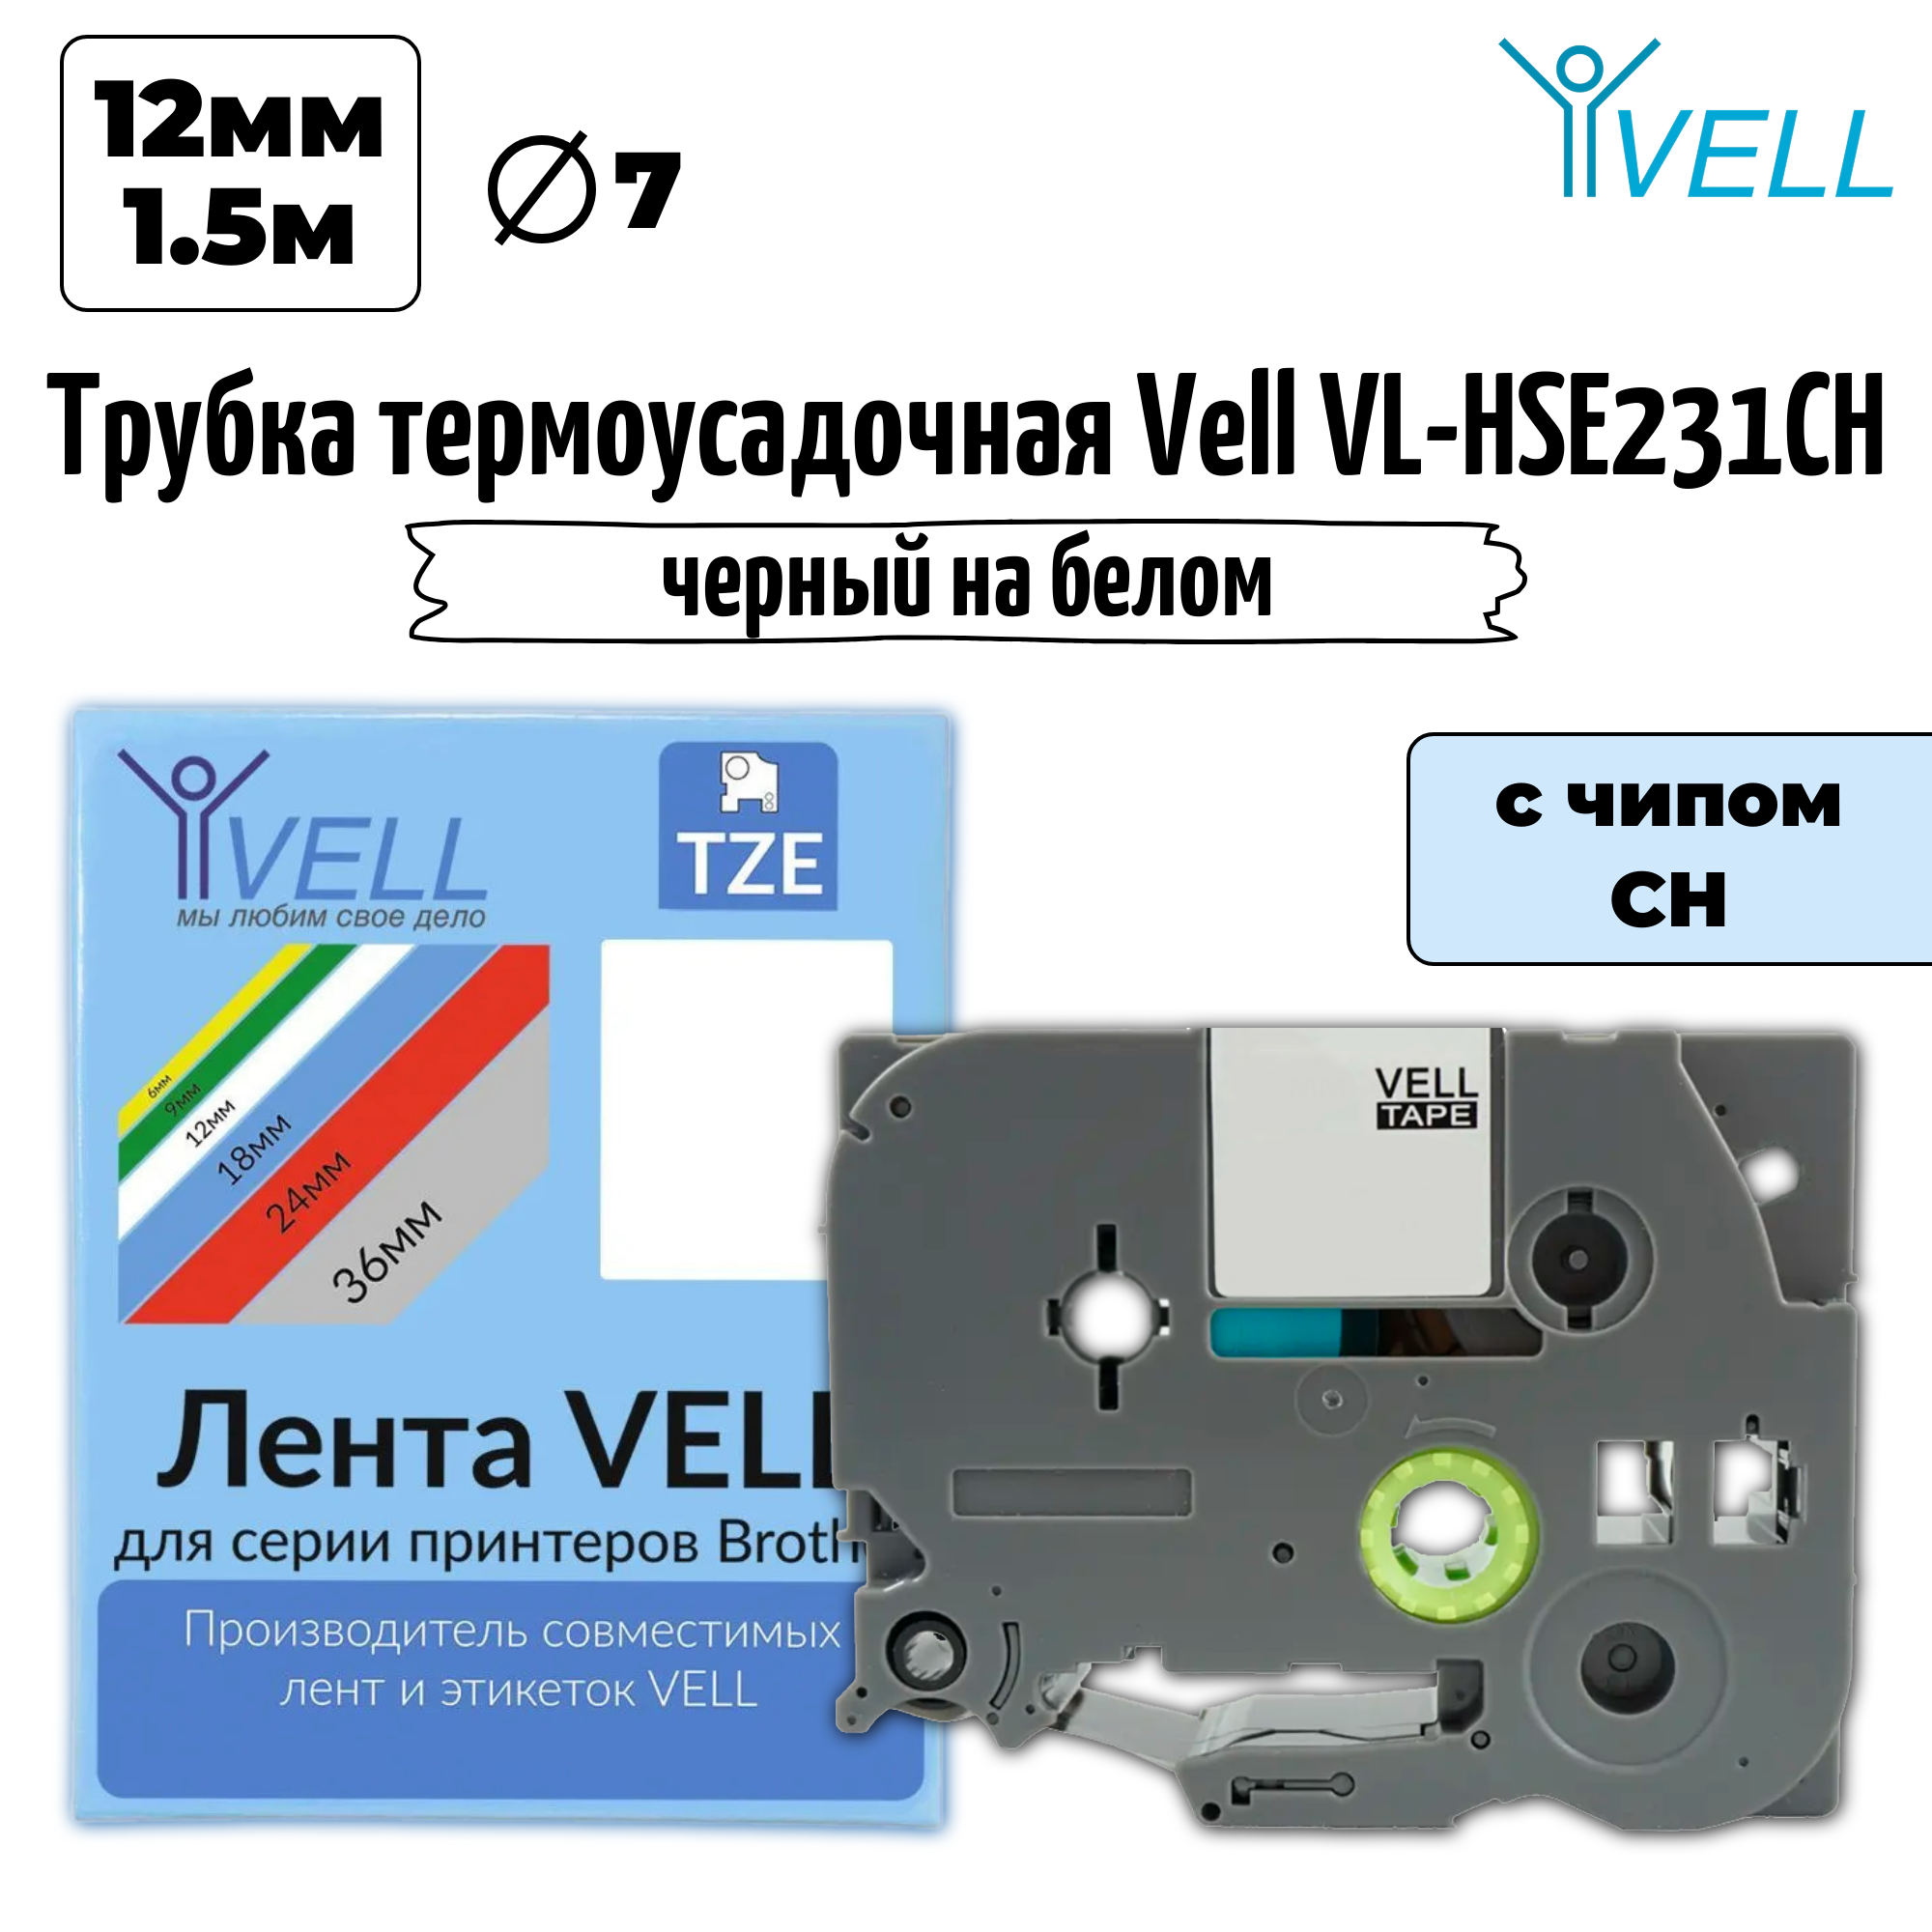 Термоусадочная трубка Vell VL-HSE231CH (с чипом, 12 мм, черный на белом) для Puty PT-100E/100ECH/Brother E300/E550 {Vell-HSE231CH}